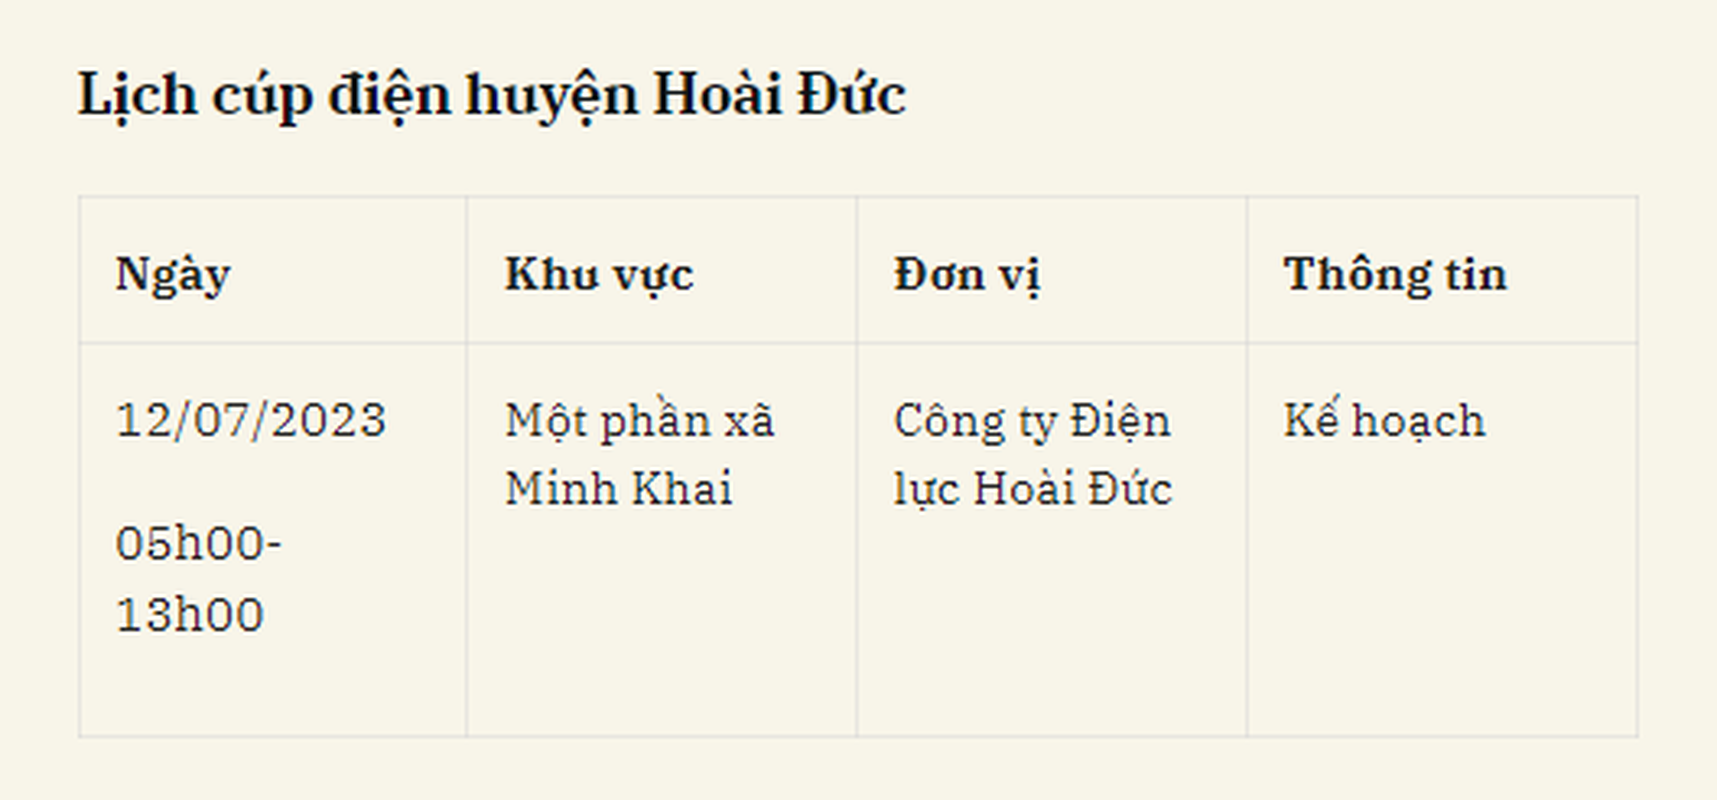 Lich cup dien Ha Noi ngay 12/7/2023: Nhieu khu vuc noi thanh mat dien-Hinh-12